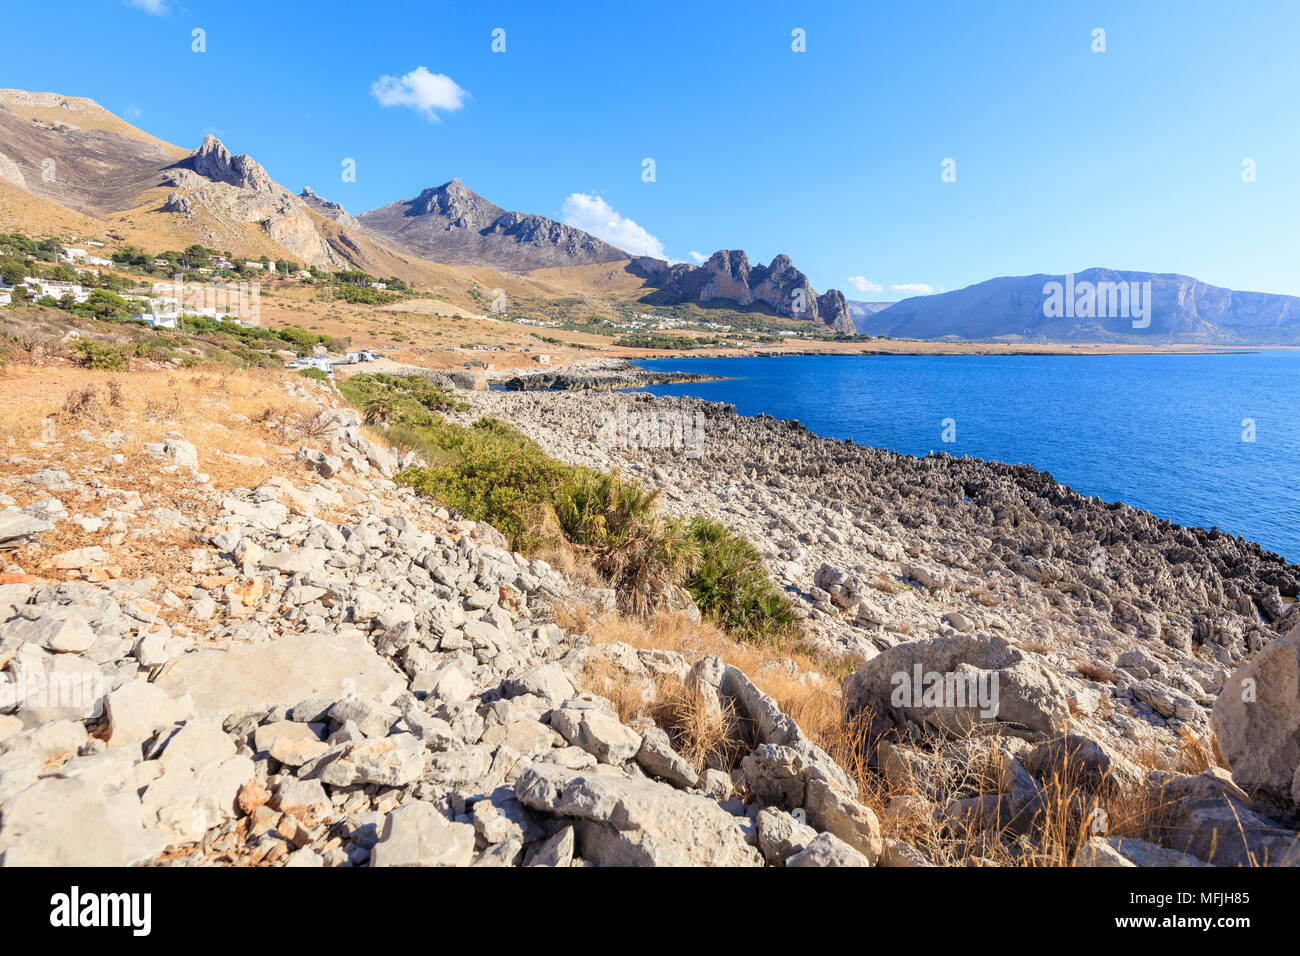 Spiaggia di Isulidda, San Vito Lo Capo, provincia di Trapani, Sicilia,  Italia, Mediterraneo, Europa Foto stock - Alamy